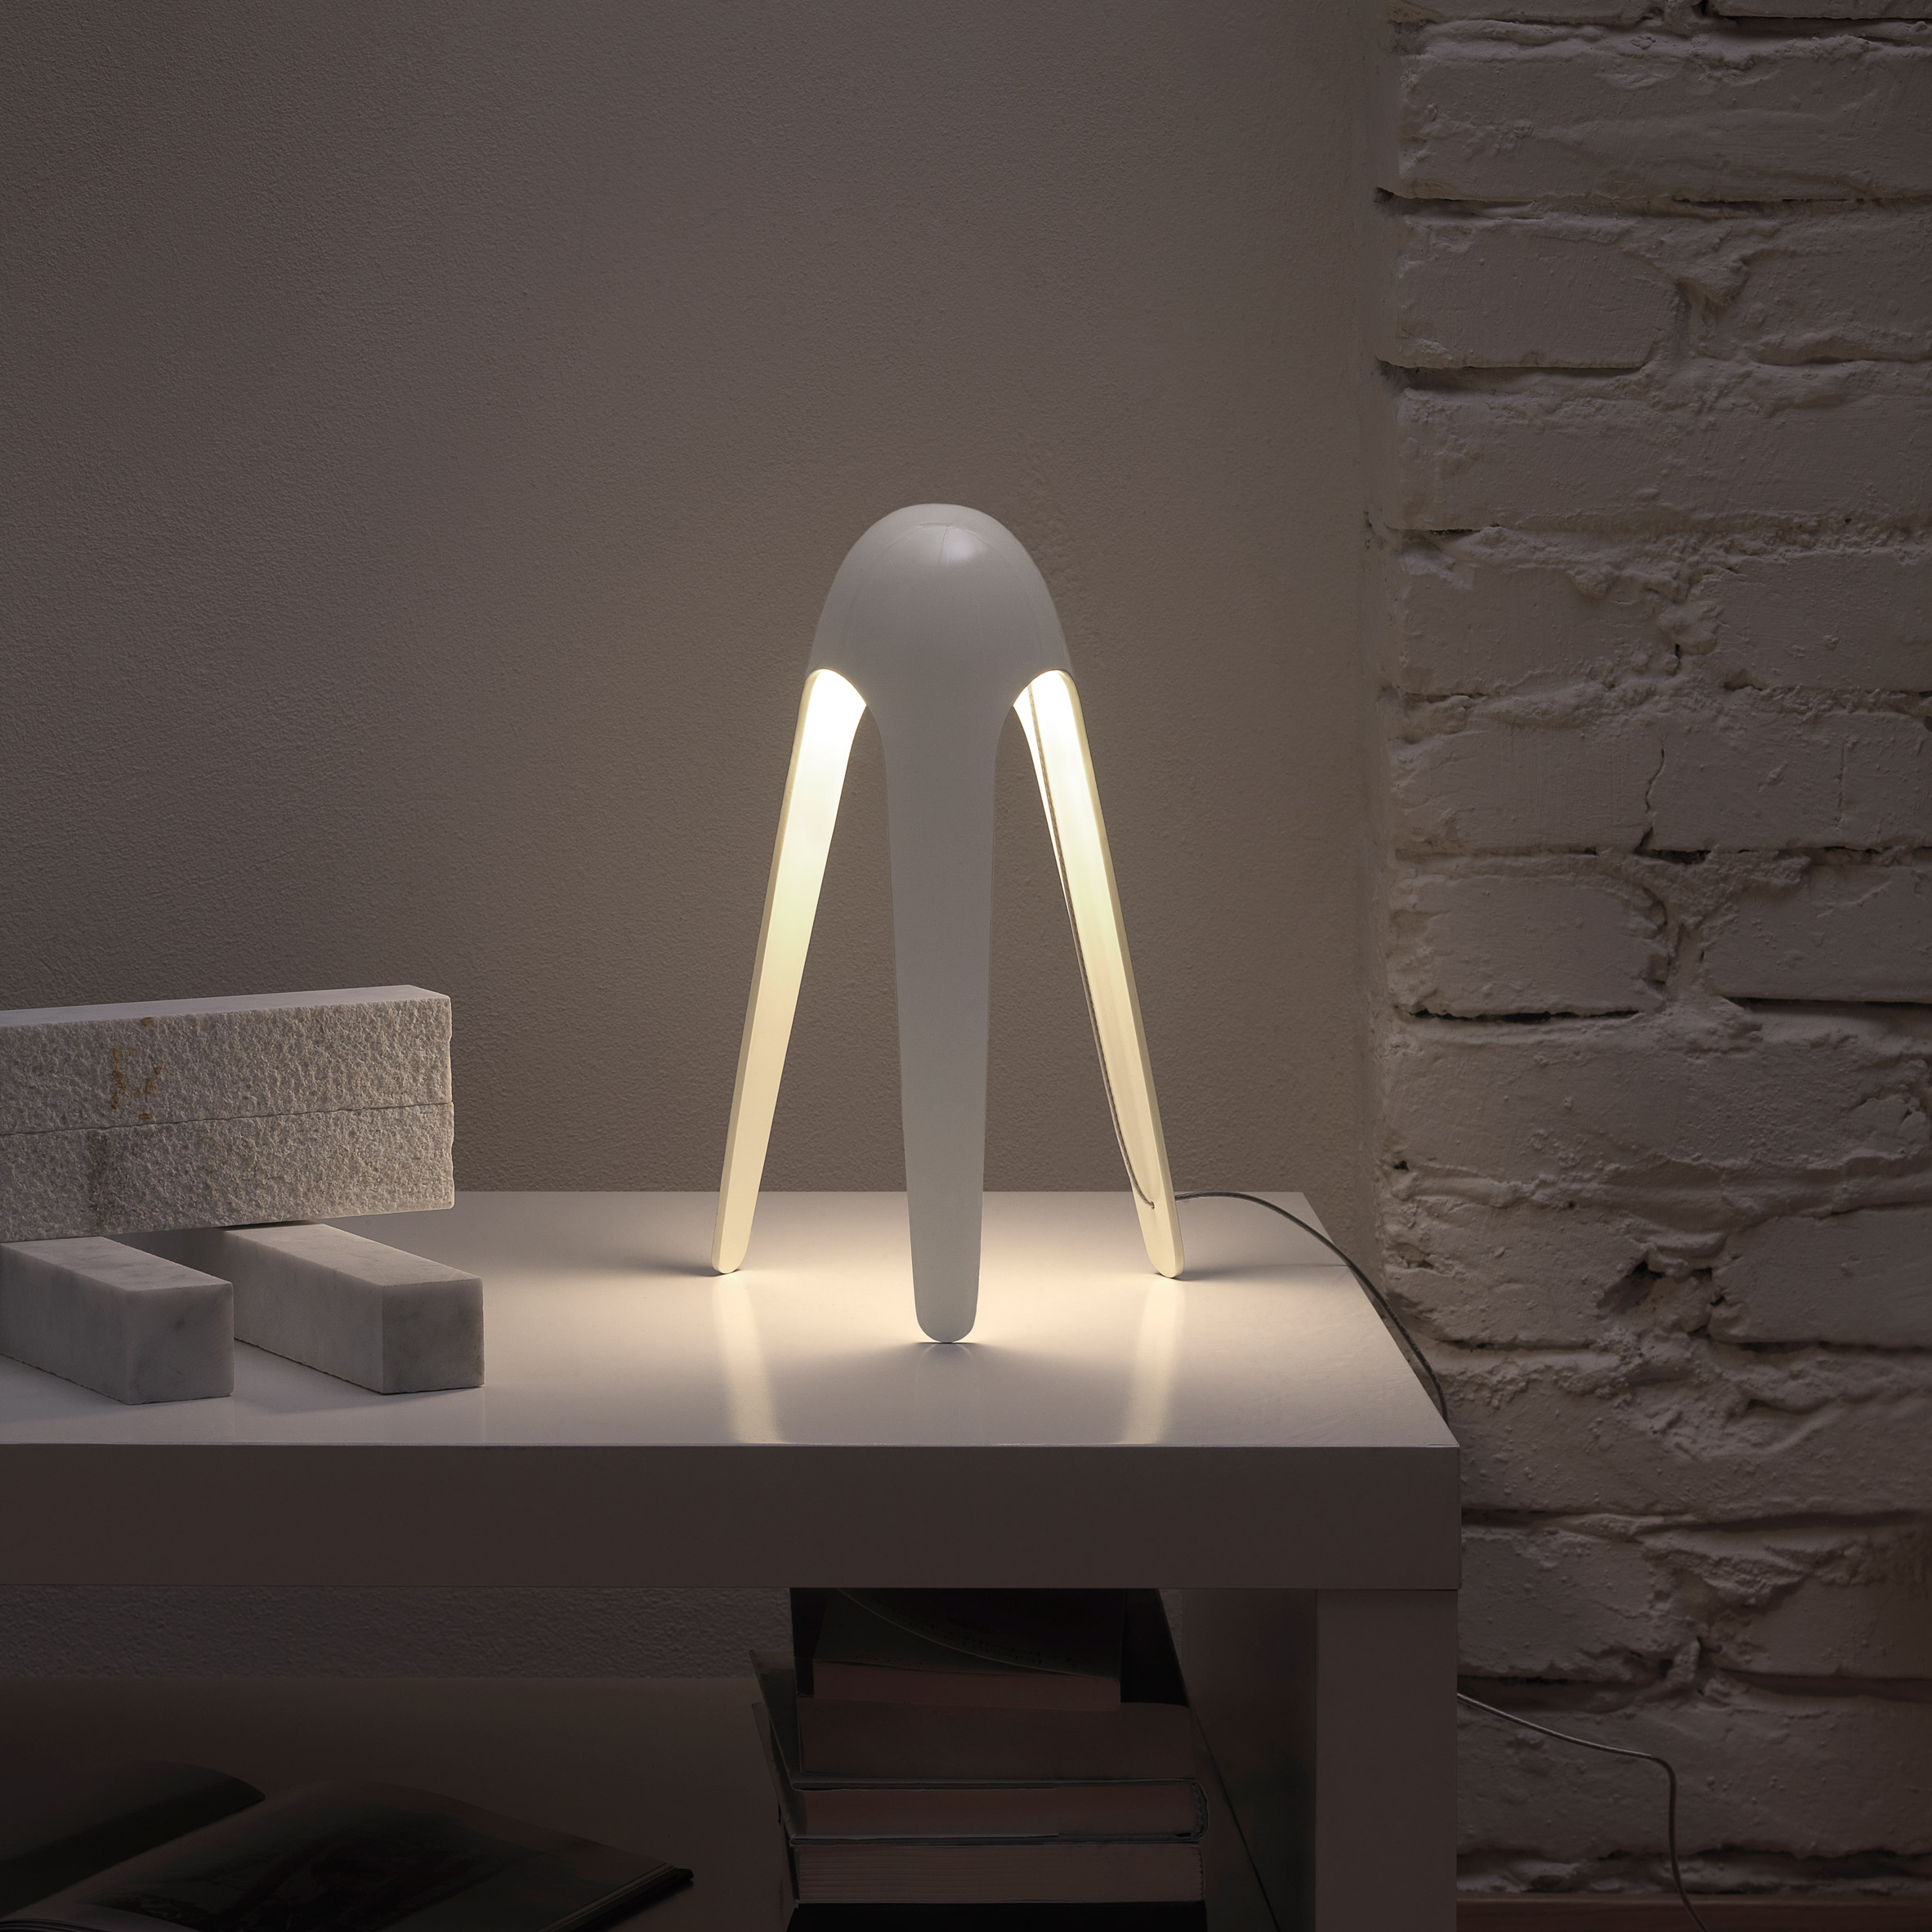 White Cyborg lamp by Karim Rashid